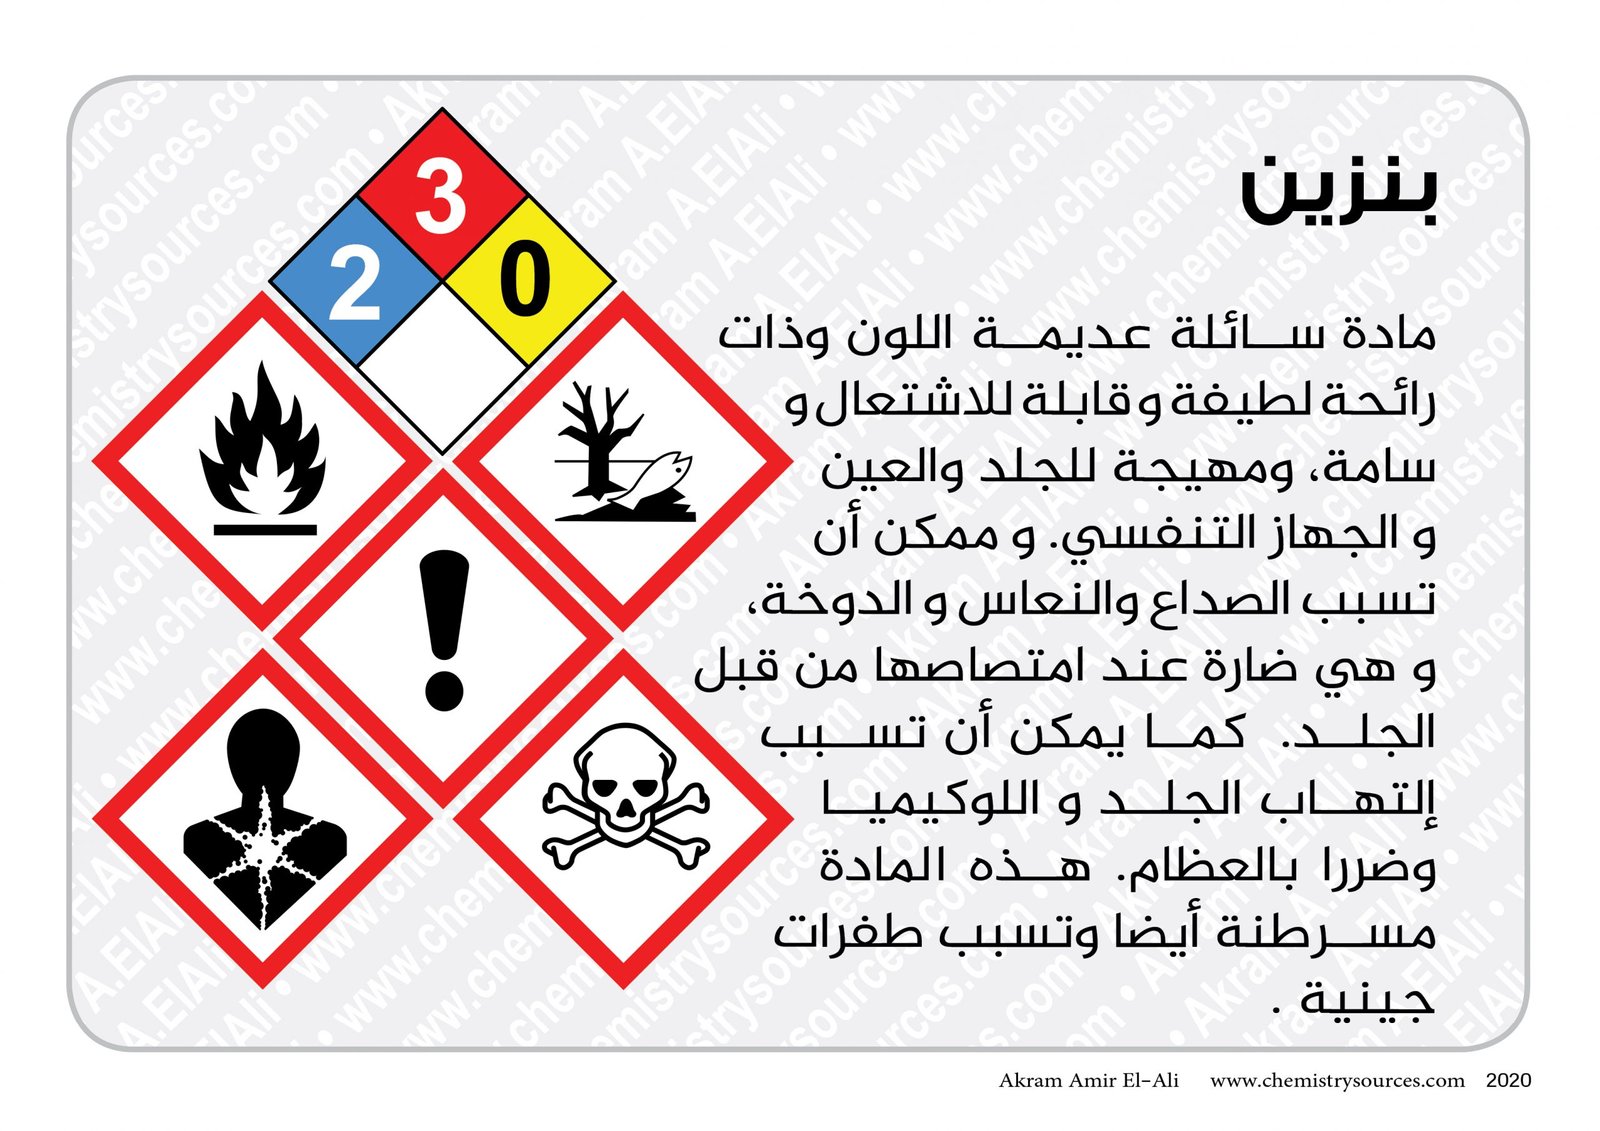 بطاقات اخطار المواد الكيميائية المختصرة7 scaled